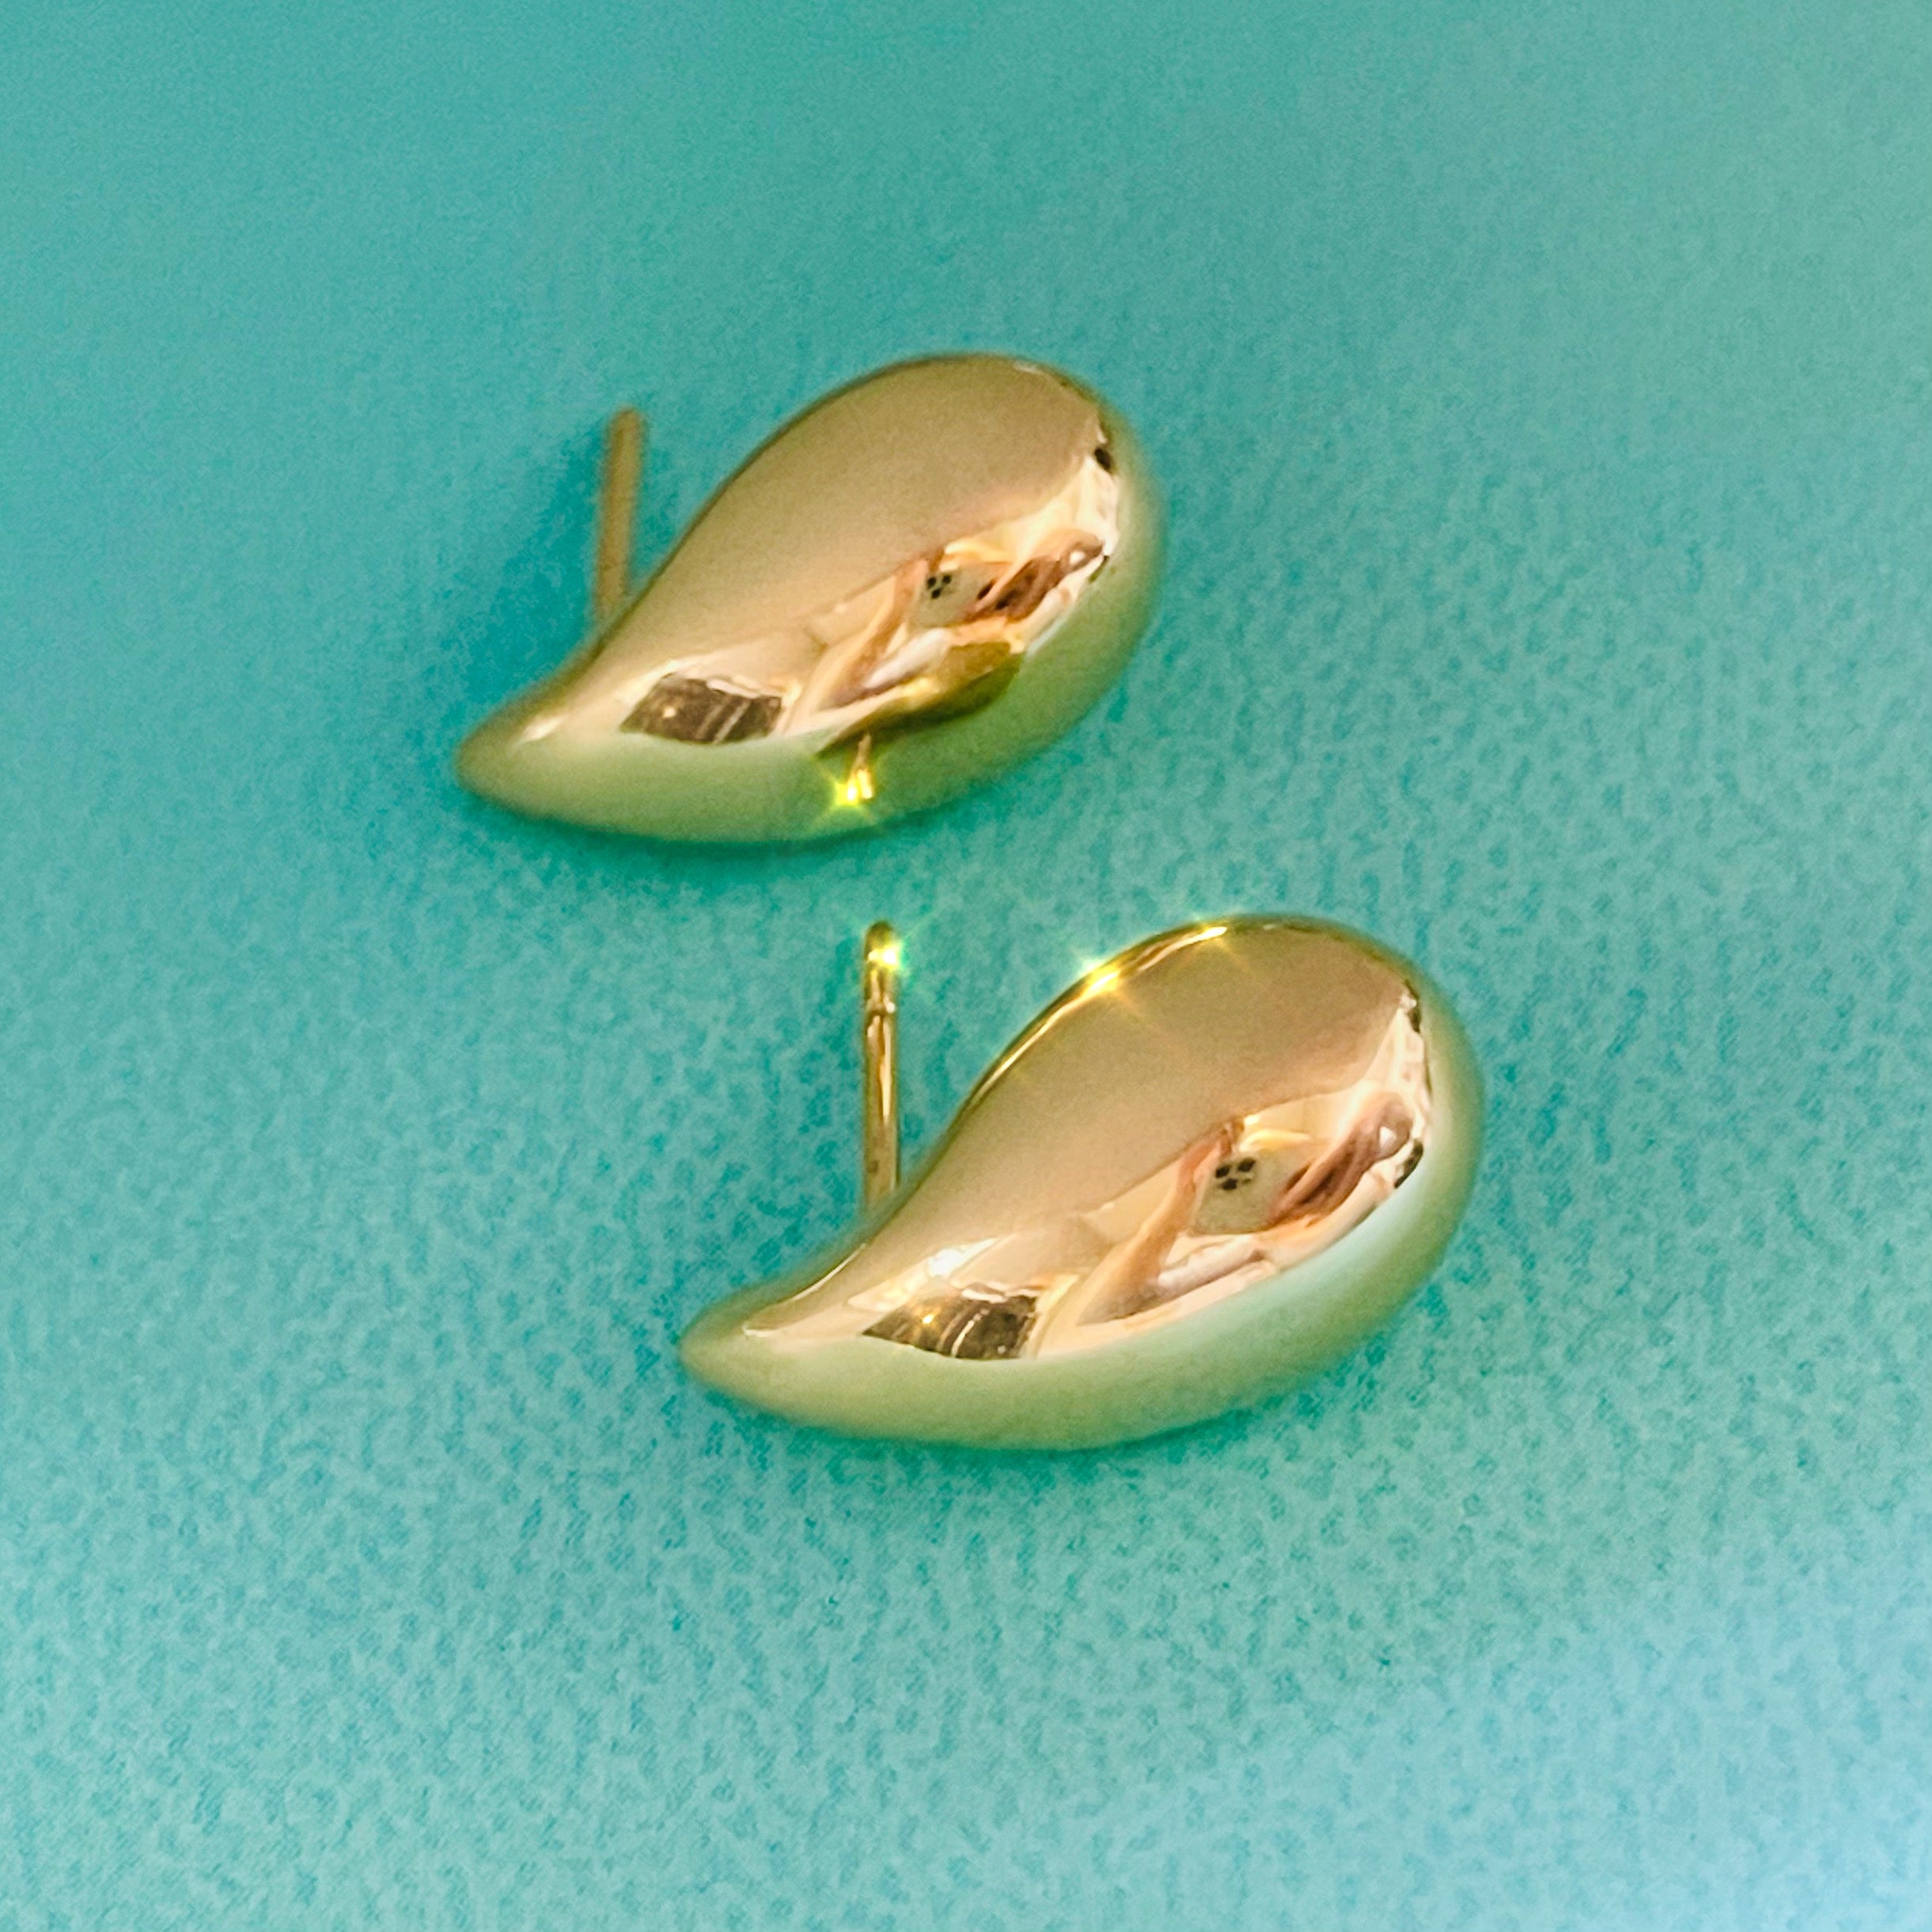 Puffed Tear Drop Shaped Stud Earrings in 10K Yellow Gold 19mm